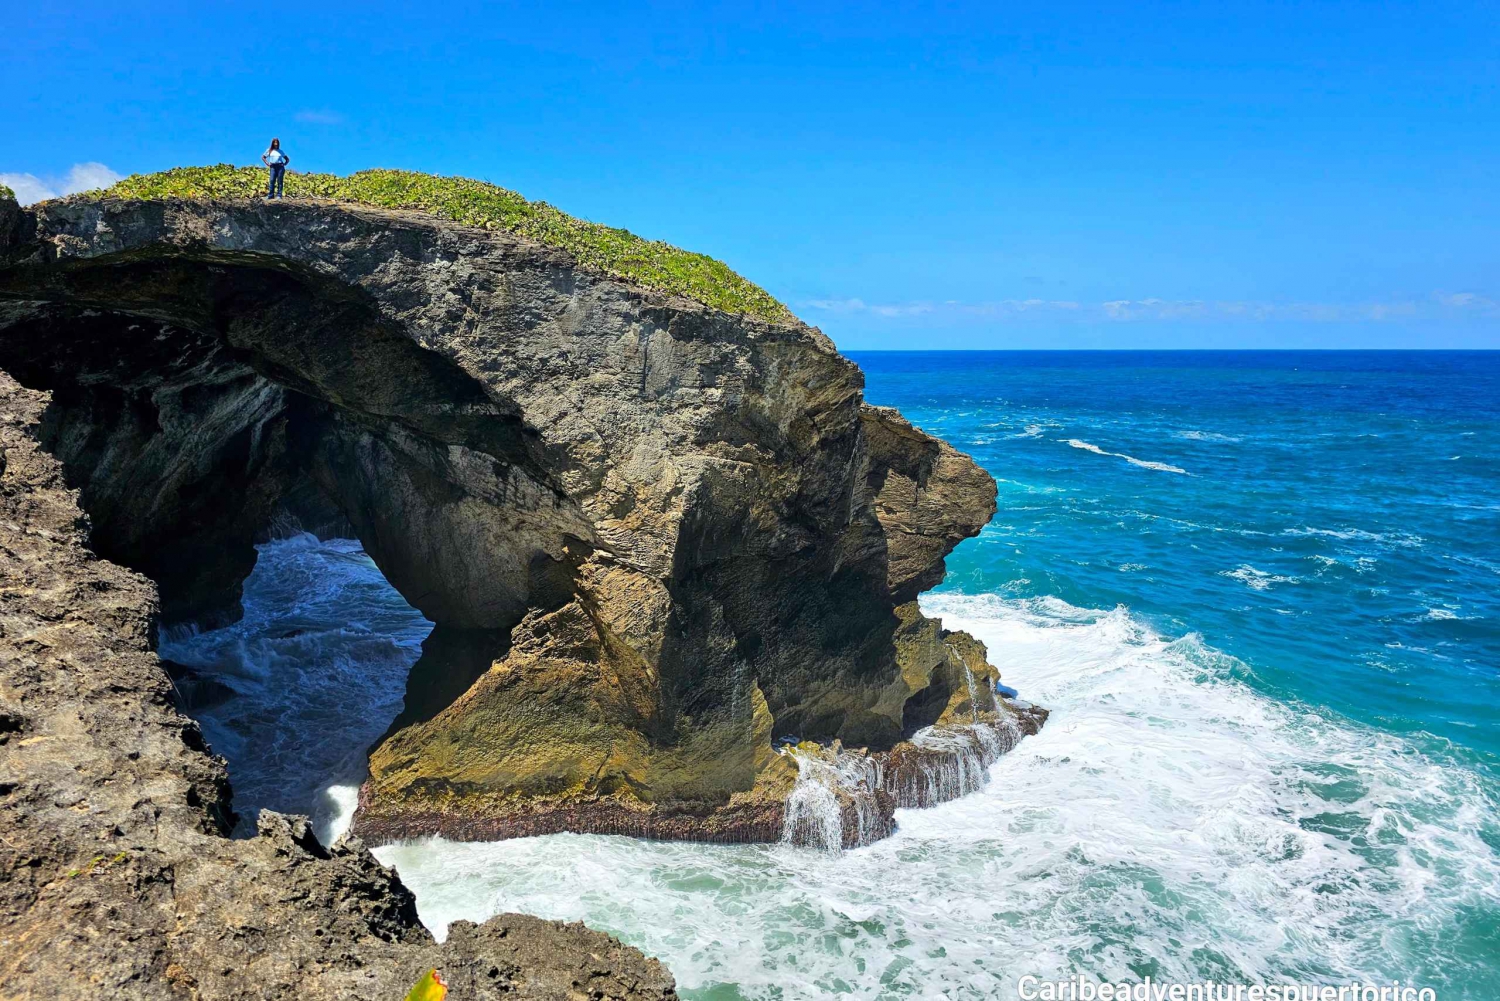 Découvrez les arches des grottes indiennes d'Arecibo, la plage et les chutes d'eau de Tanamá.